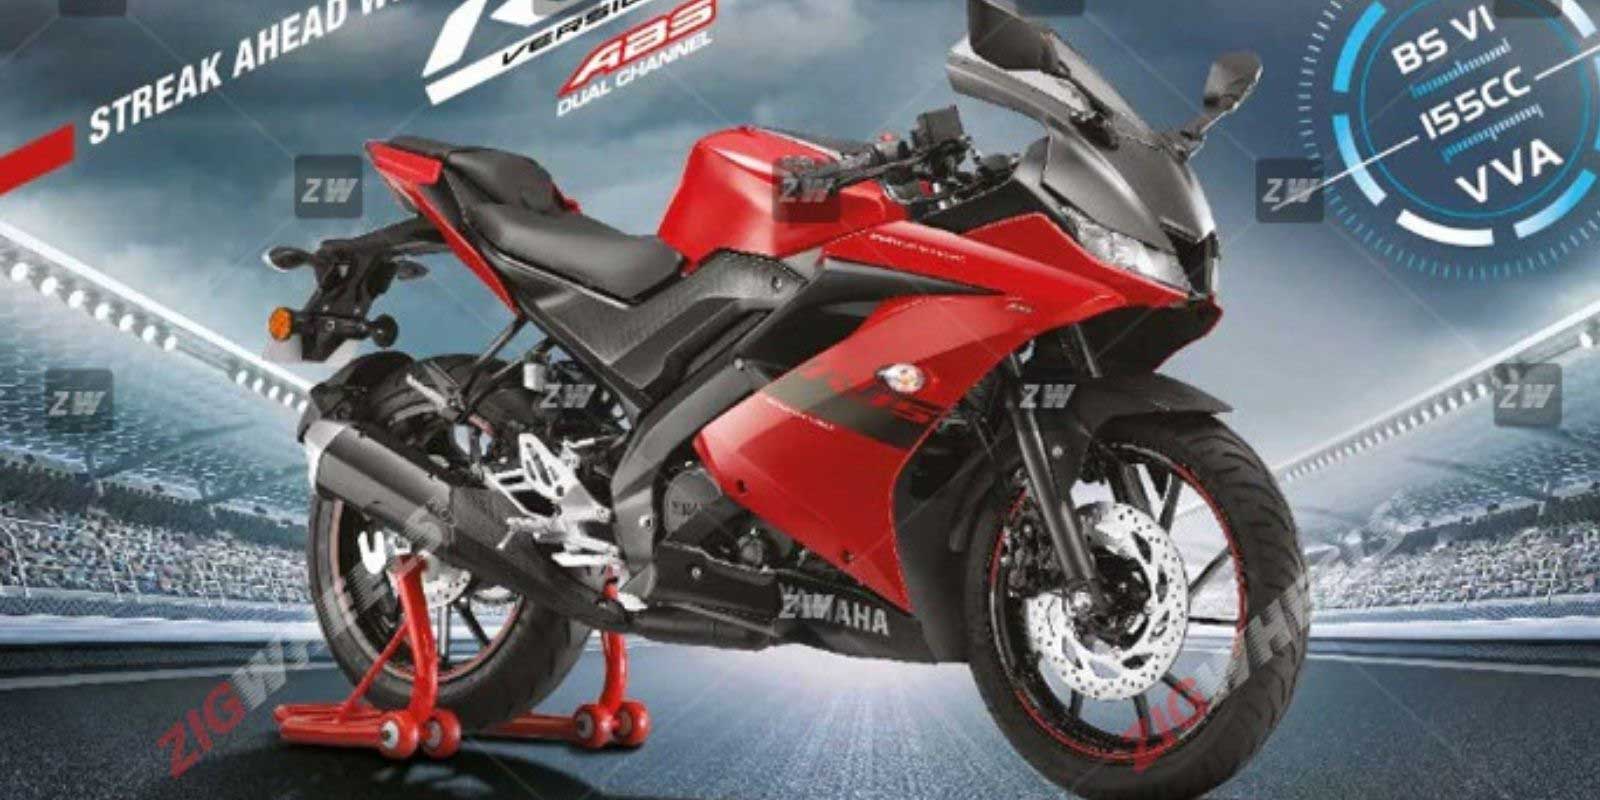 R15 V3 Warna Merah. Yamaha R15 V3 India Bakal Dapat Warna Baru, Spesifikasi Tetap